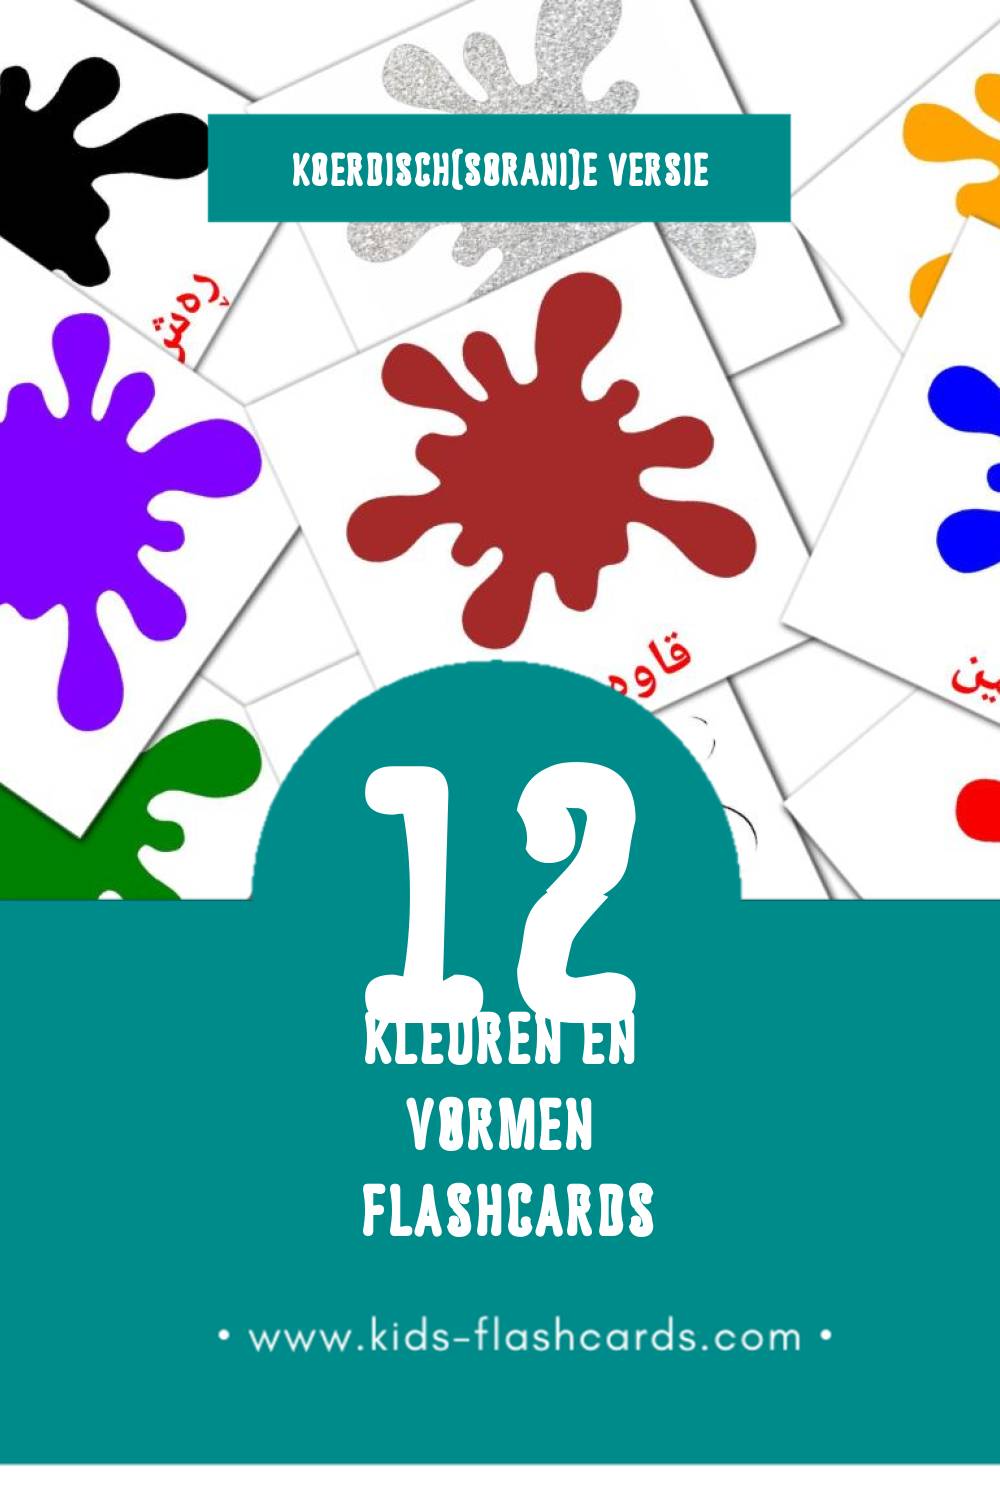 Visuele ڕەنگ و شێوەکان Flashcards voor Kleuters (12 kaarten in het Koerdisch(sorani))